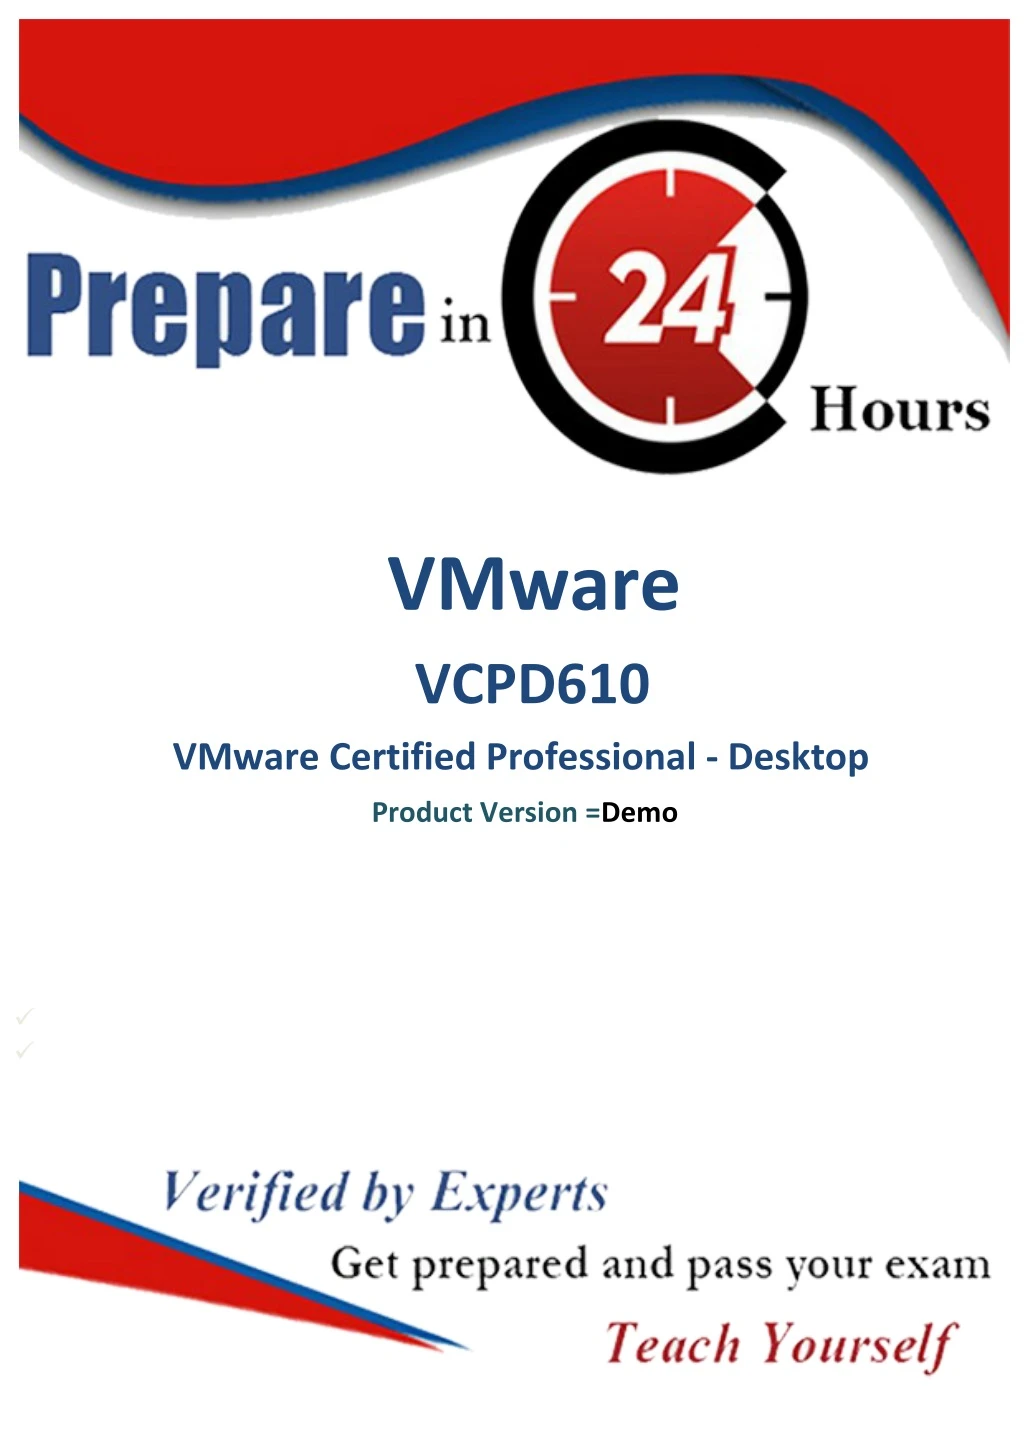 vmware vcpd610